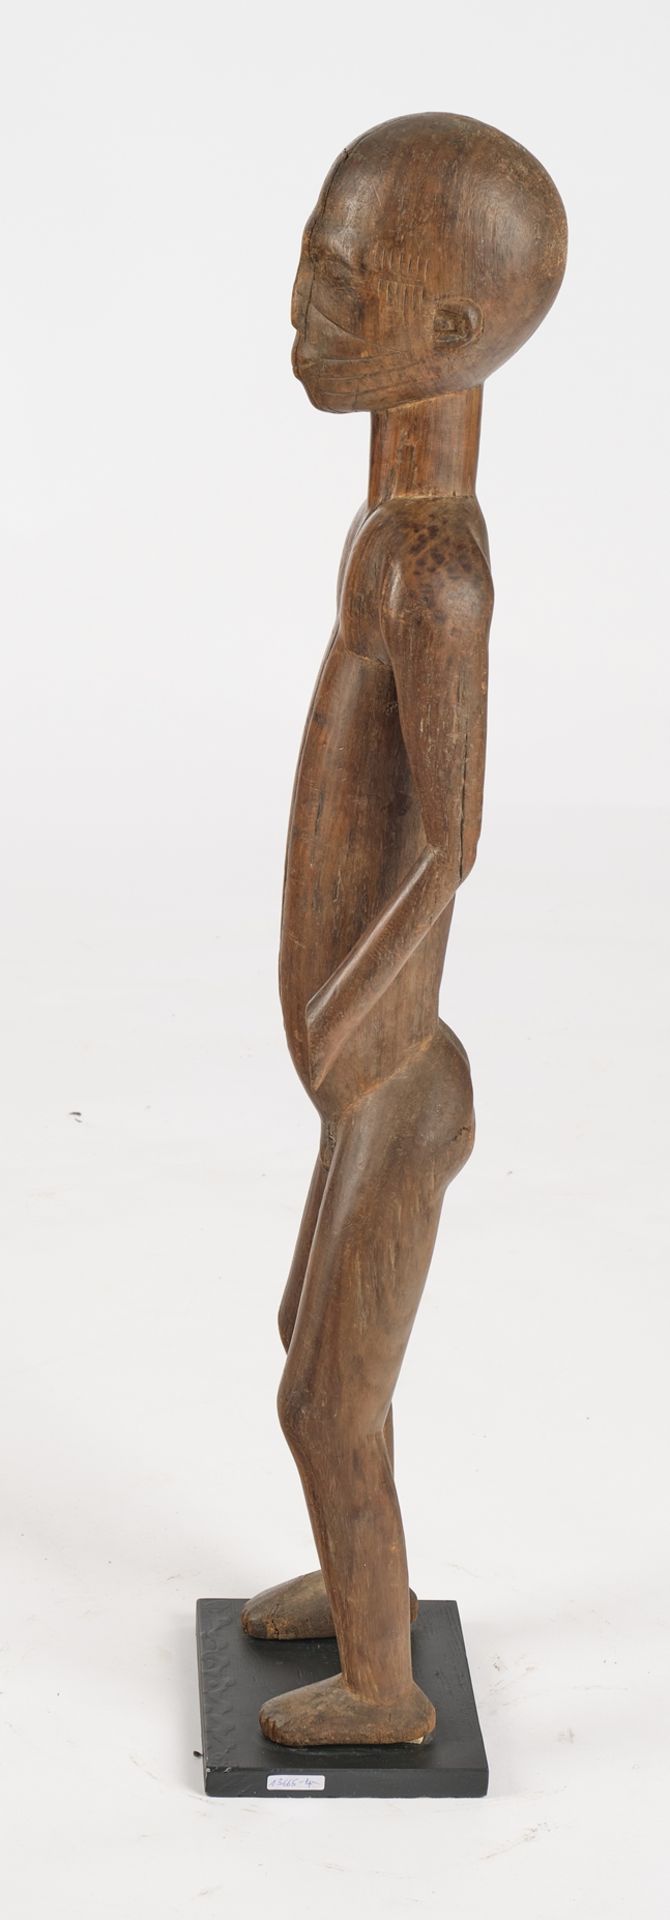 Figur, männlich, Mossi, Burkina Faso, Afrika, Holz, 86.5 cm hoch, gesockelt - Bild 2 aus 4